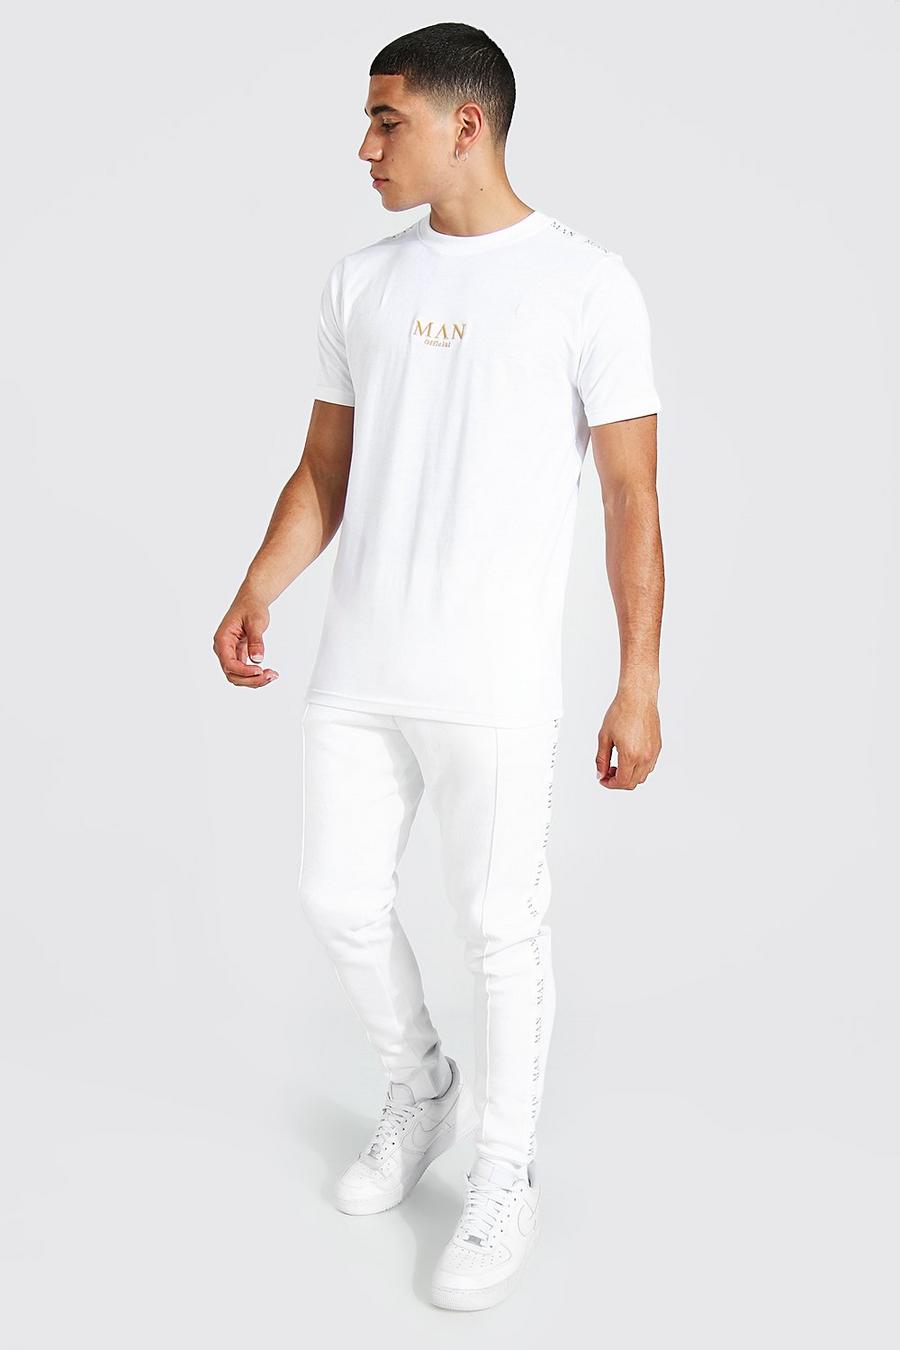 Man Gold T-Shirt und Jogginghose, White weiß image number 1